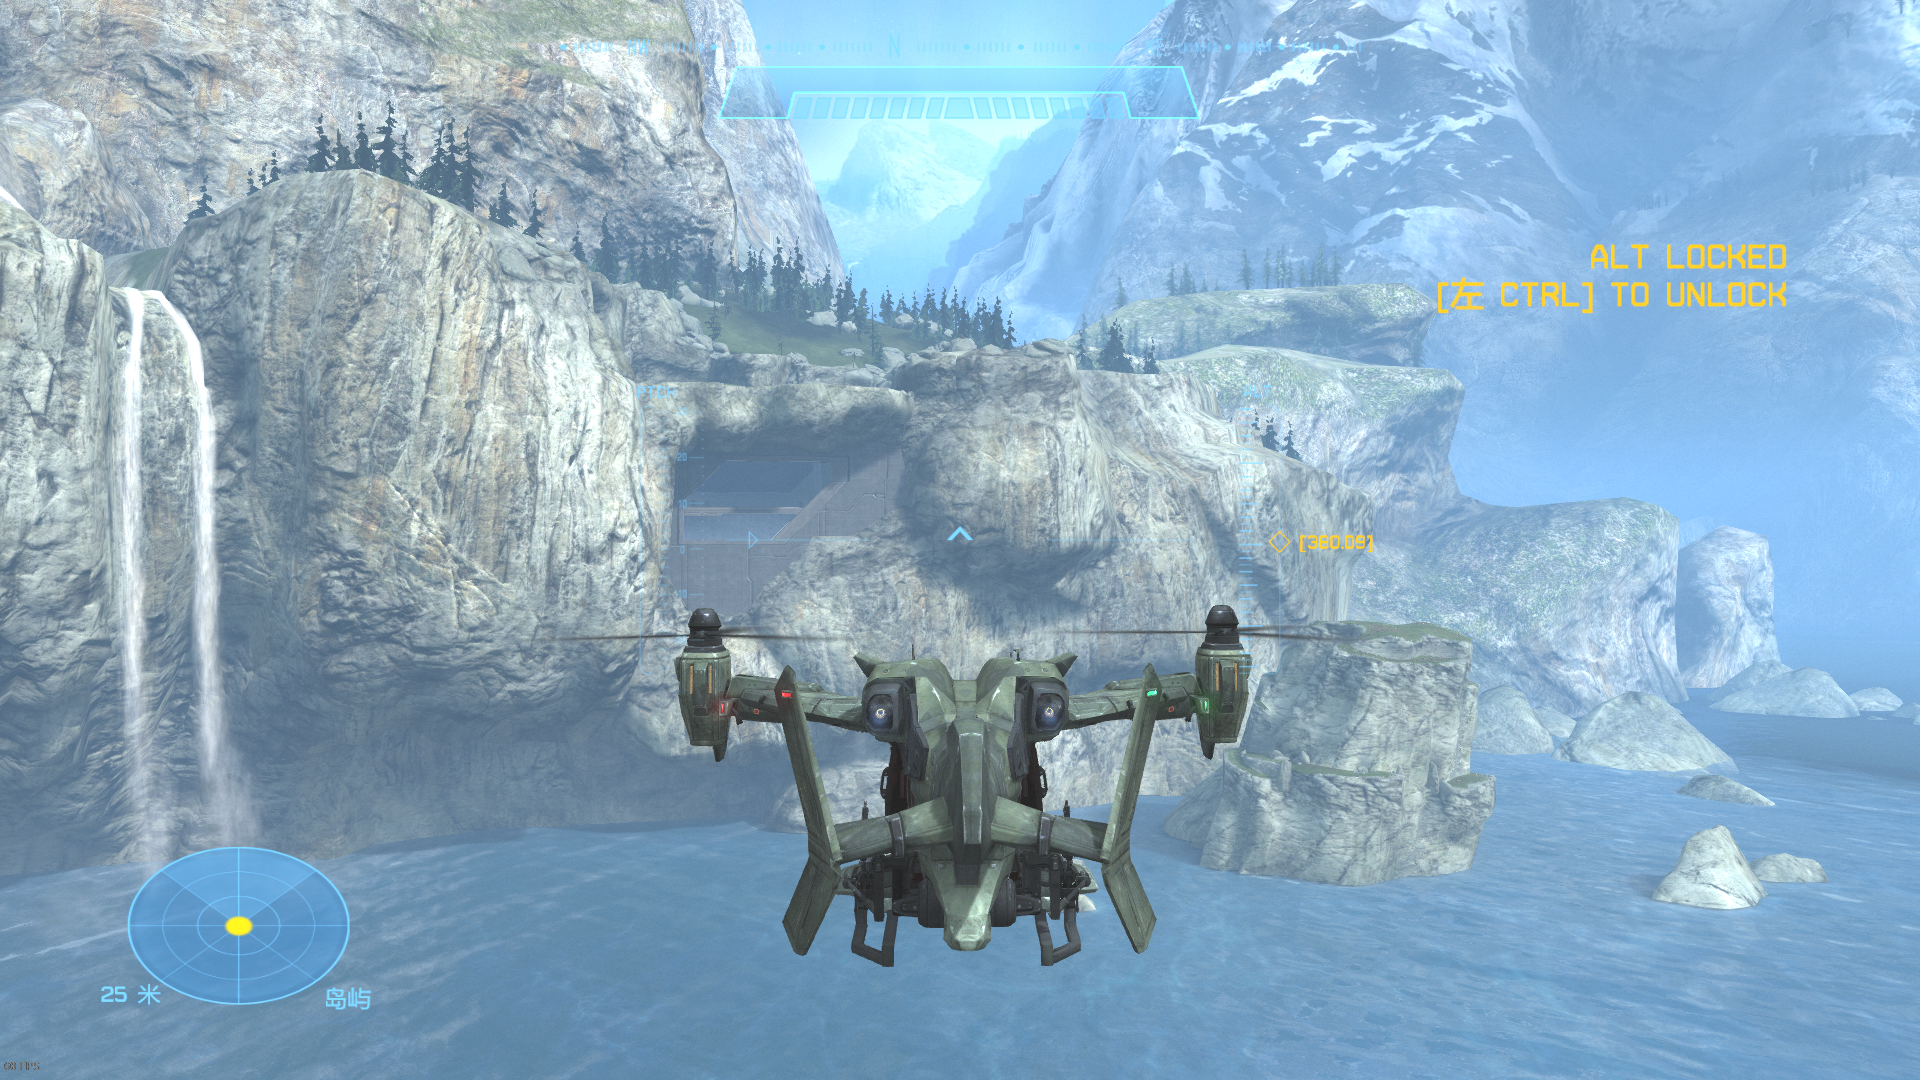 【PC游戏】HALO中的那些载具 —— UH-144猎鹰号通用直升机-第27张